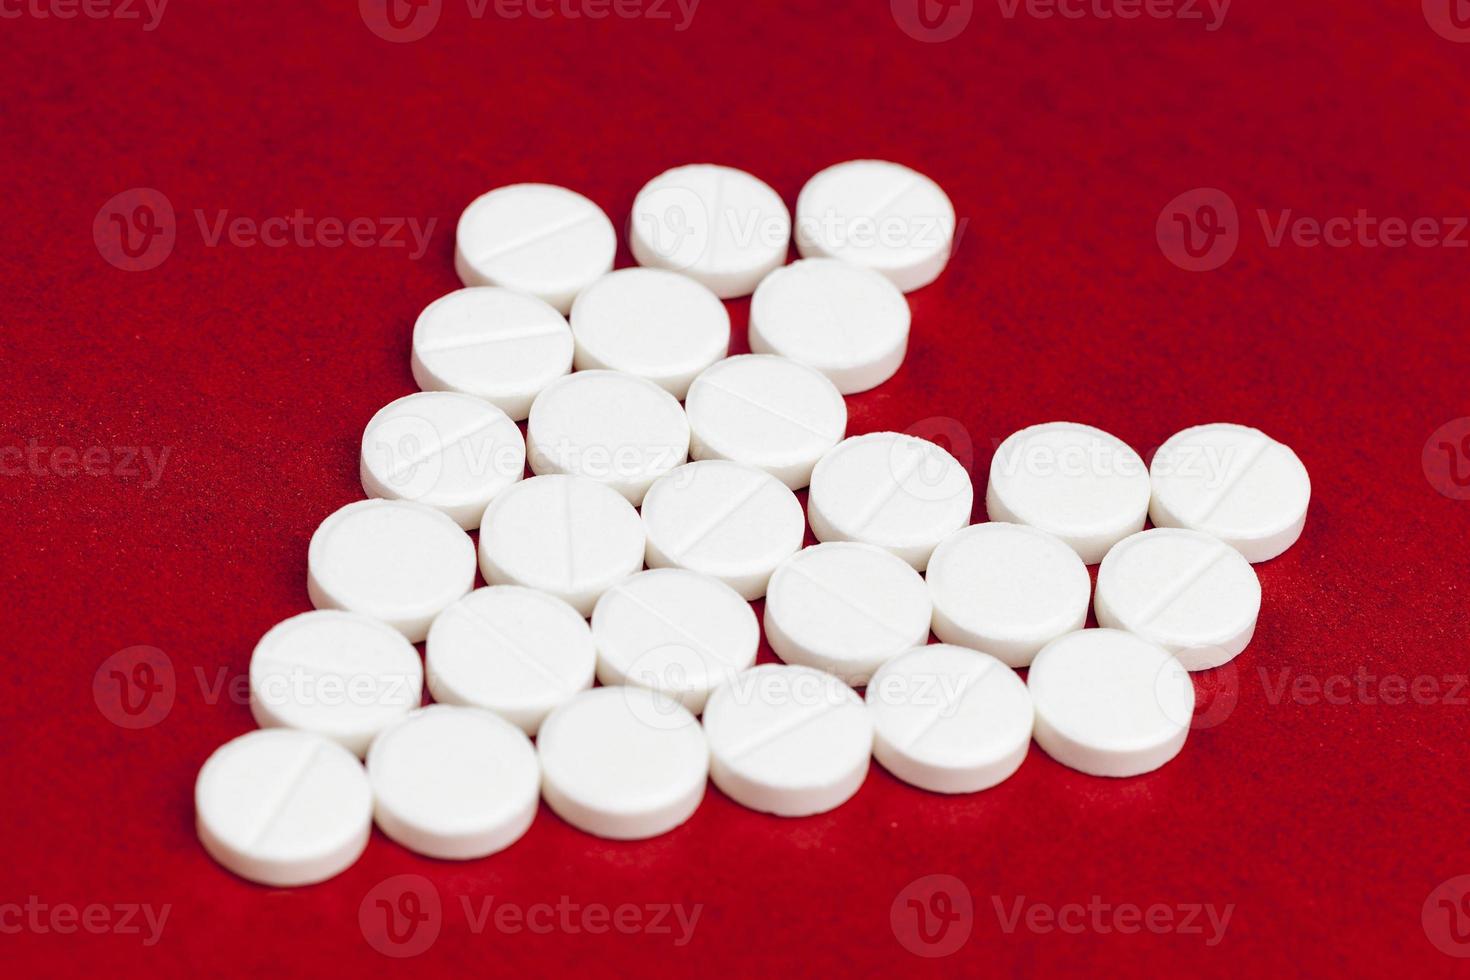 medicinska läkemedel tabletter staplade på en röd bakgrund i form av ett hjärta foto